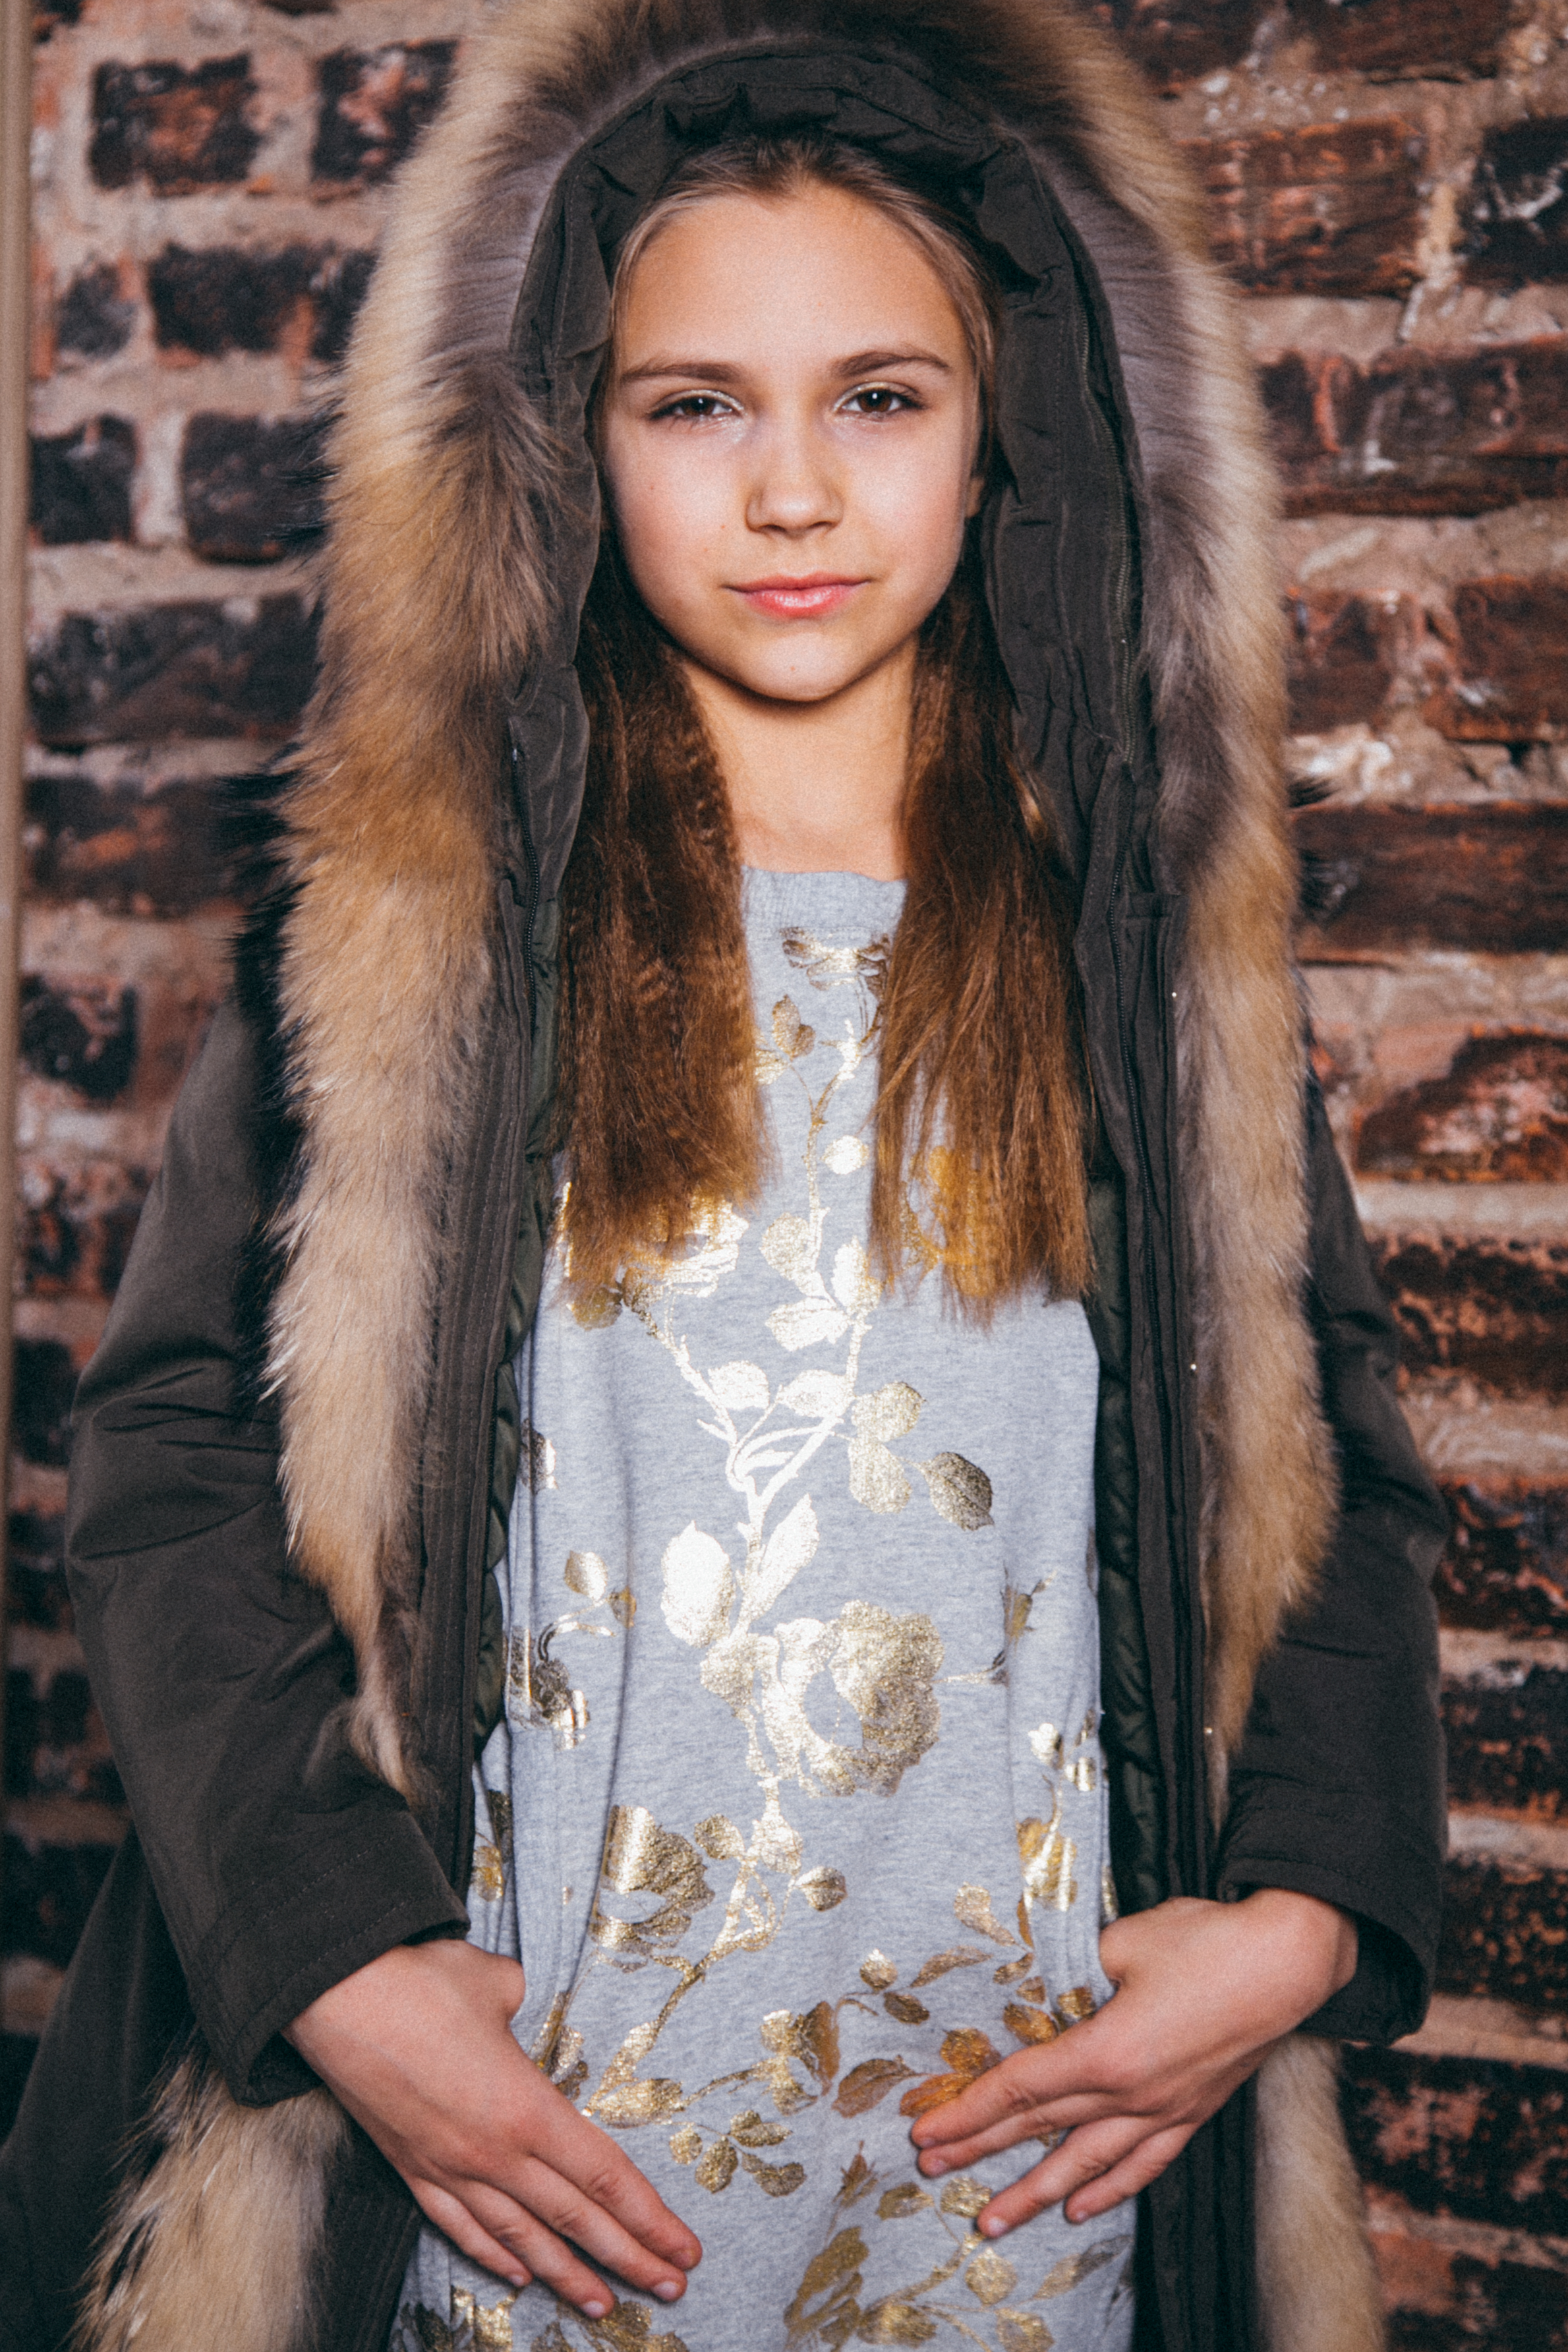 Дарья Короткова - аккредитованная модель для участия в подиумных показах на Междунродной Детской Неделе моды